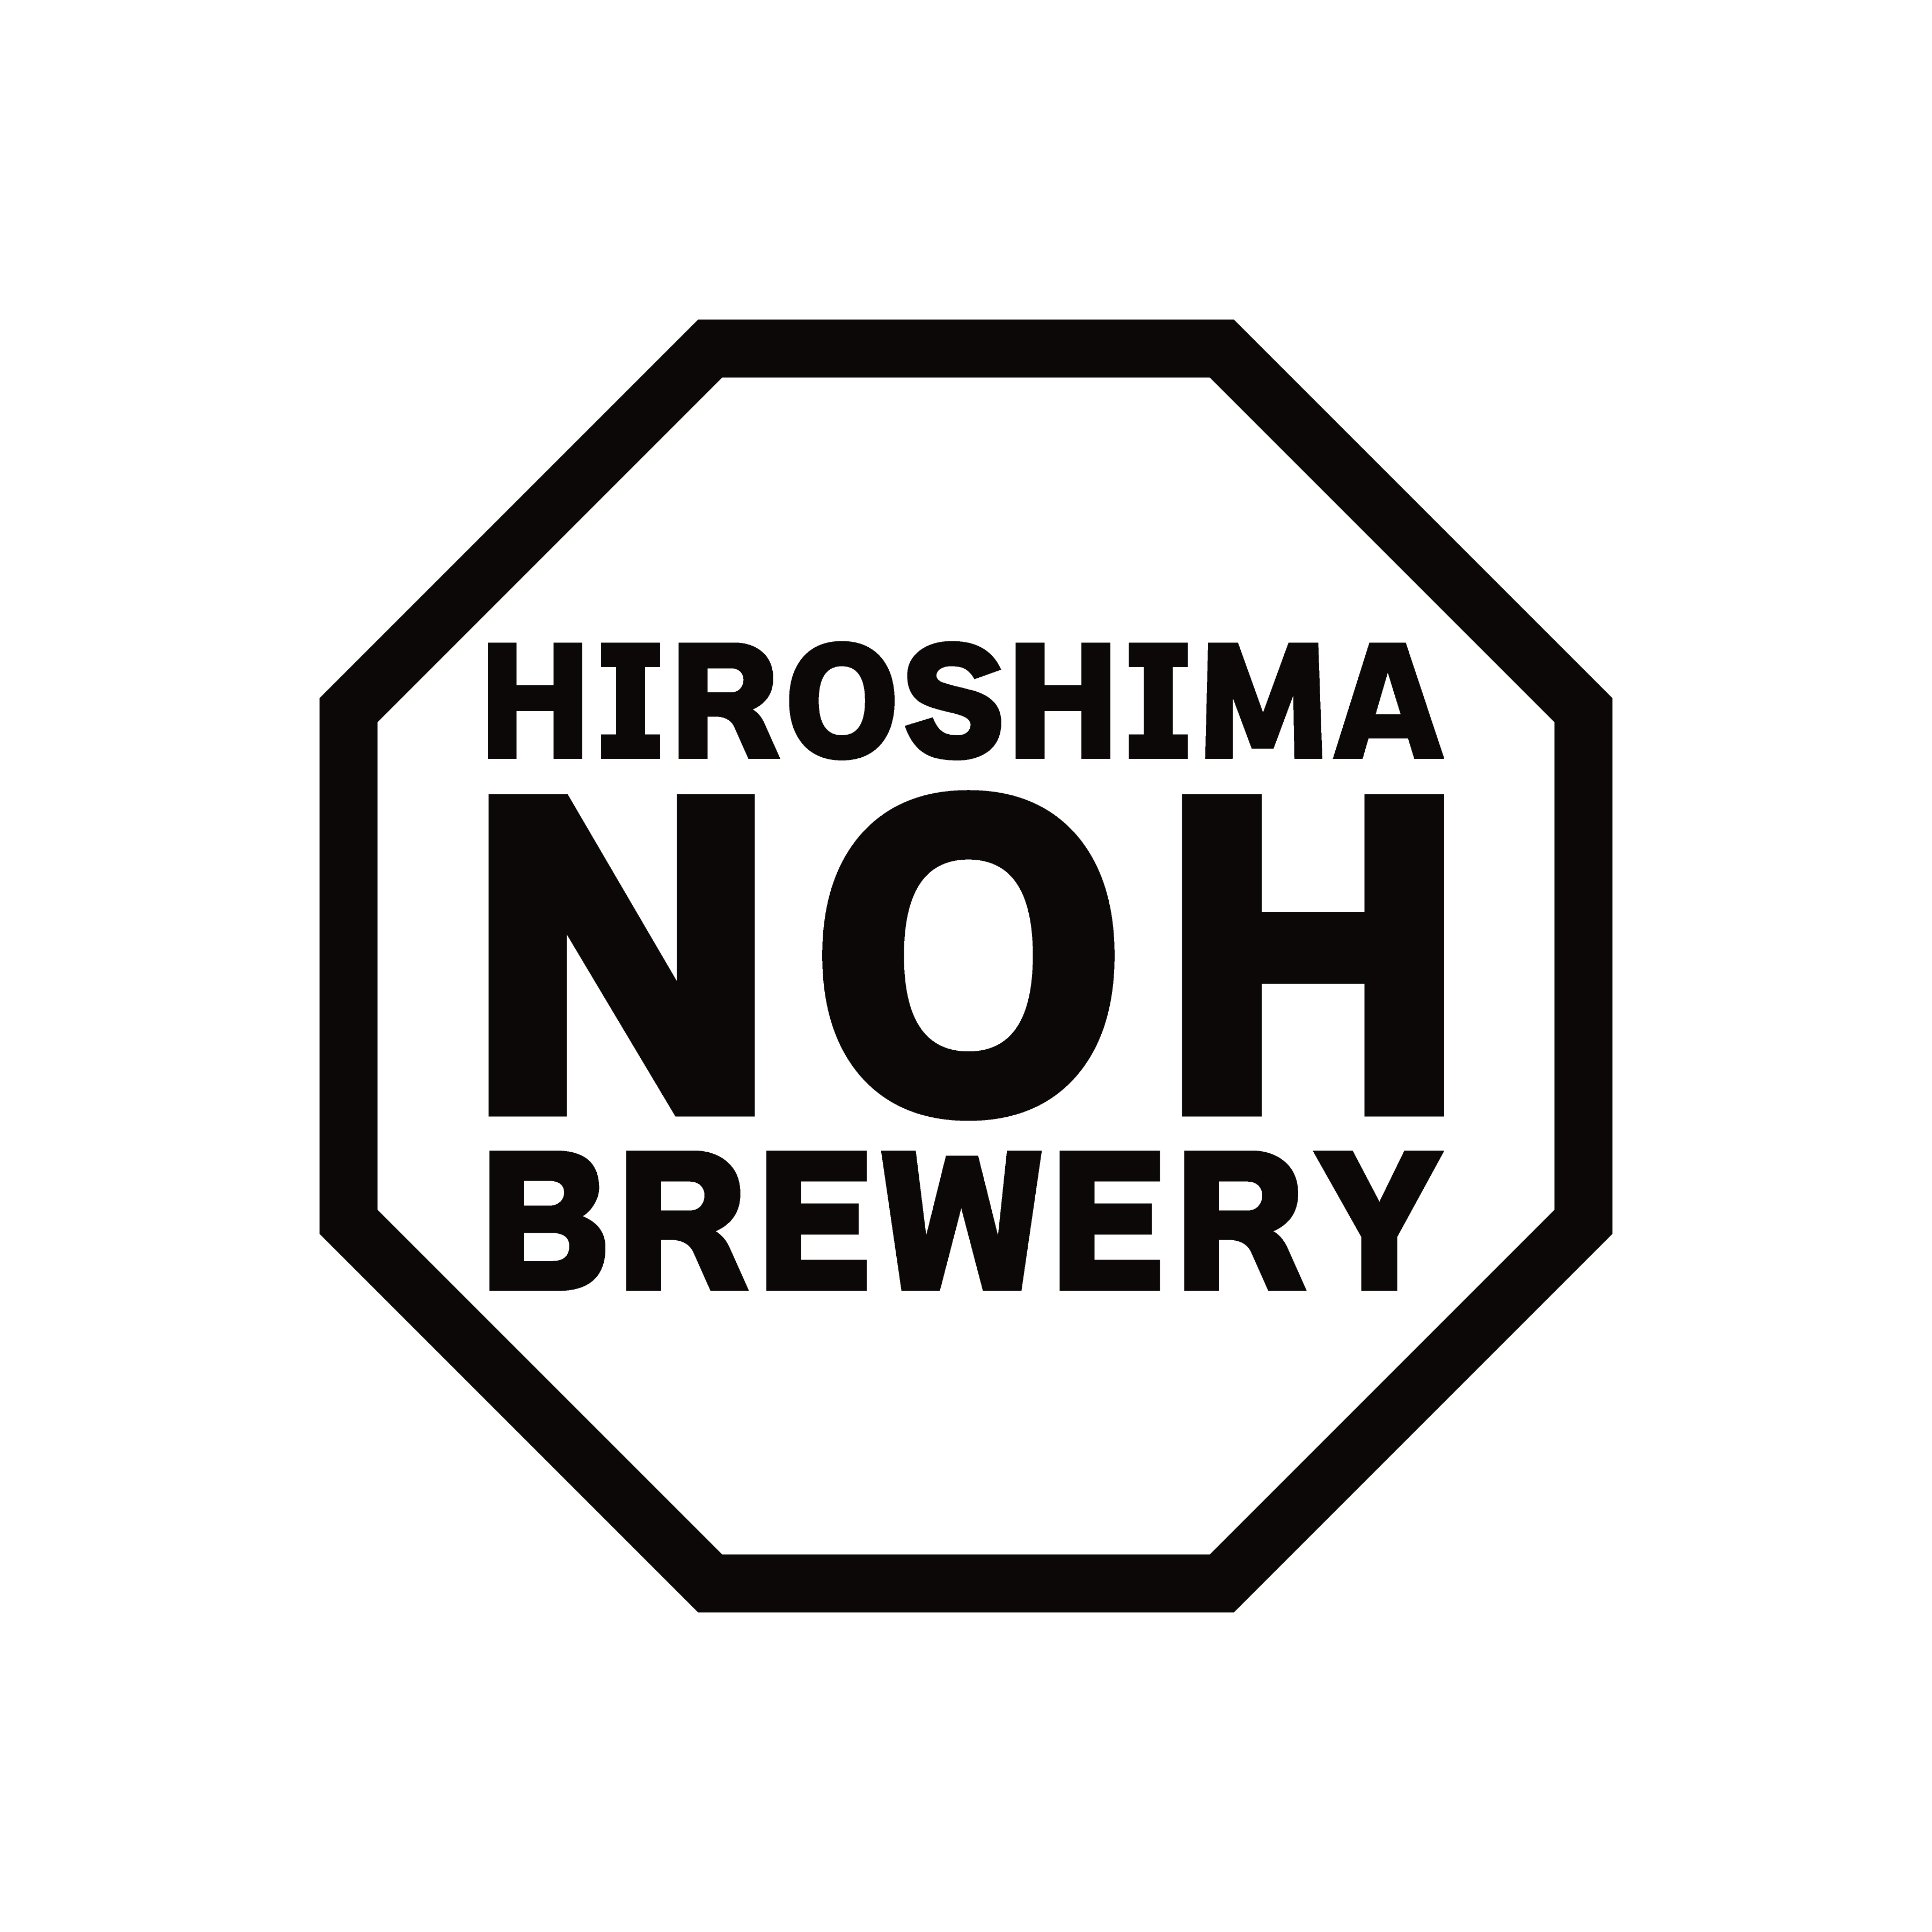 HIROSHIMA NOH BREWERY